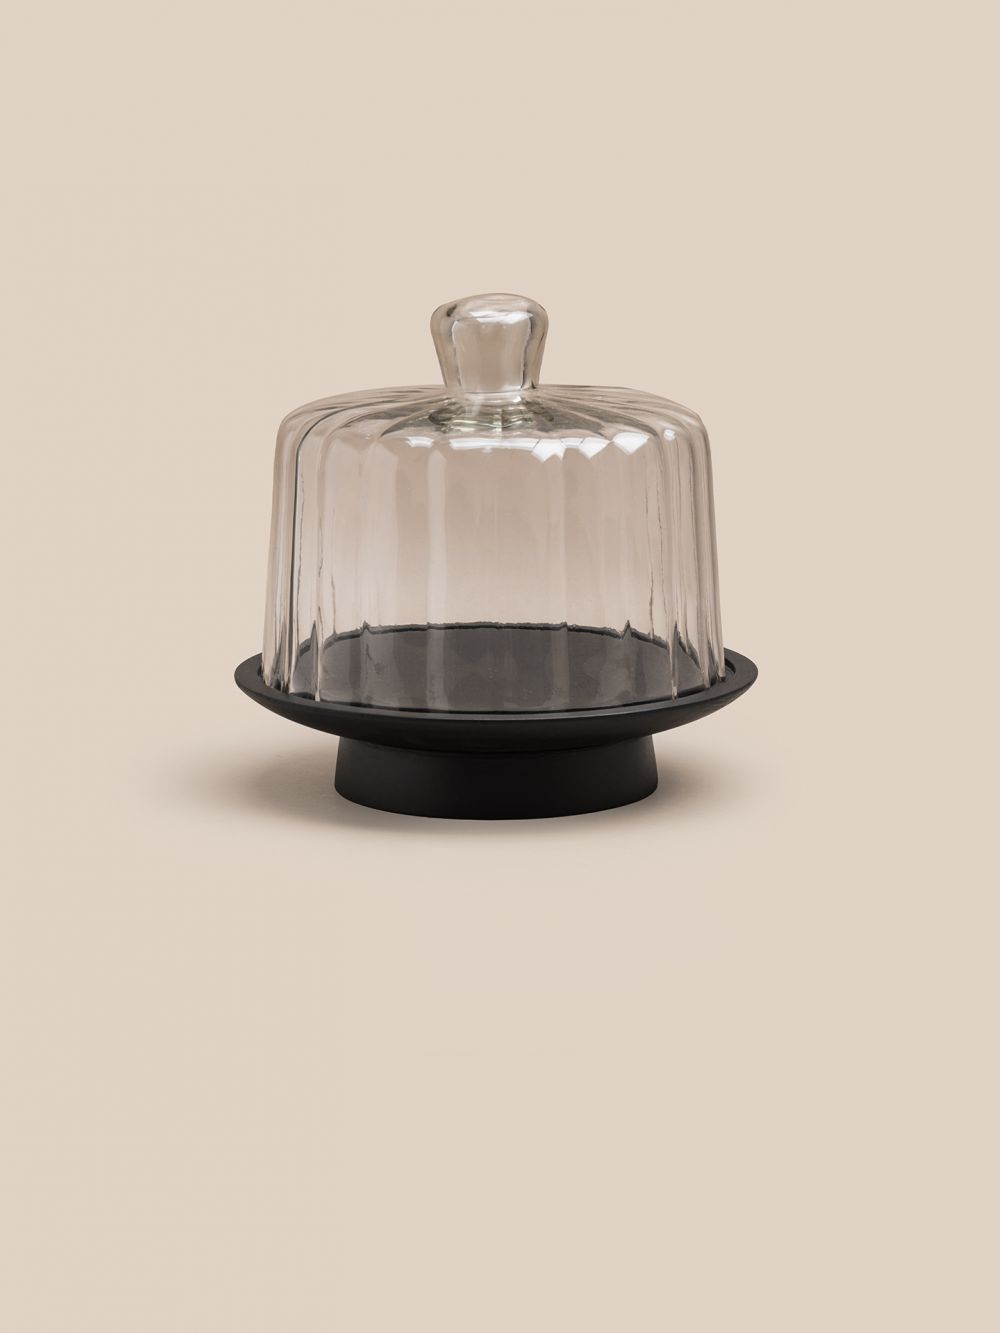 פעמון לעוגה זכוכית ועץ שחור 25 ס”מ